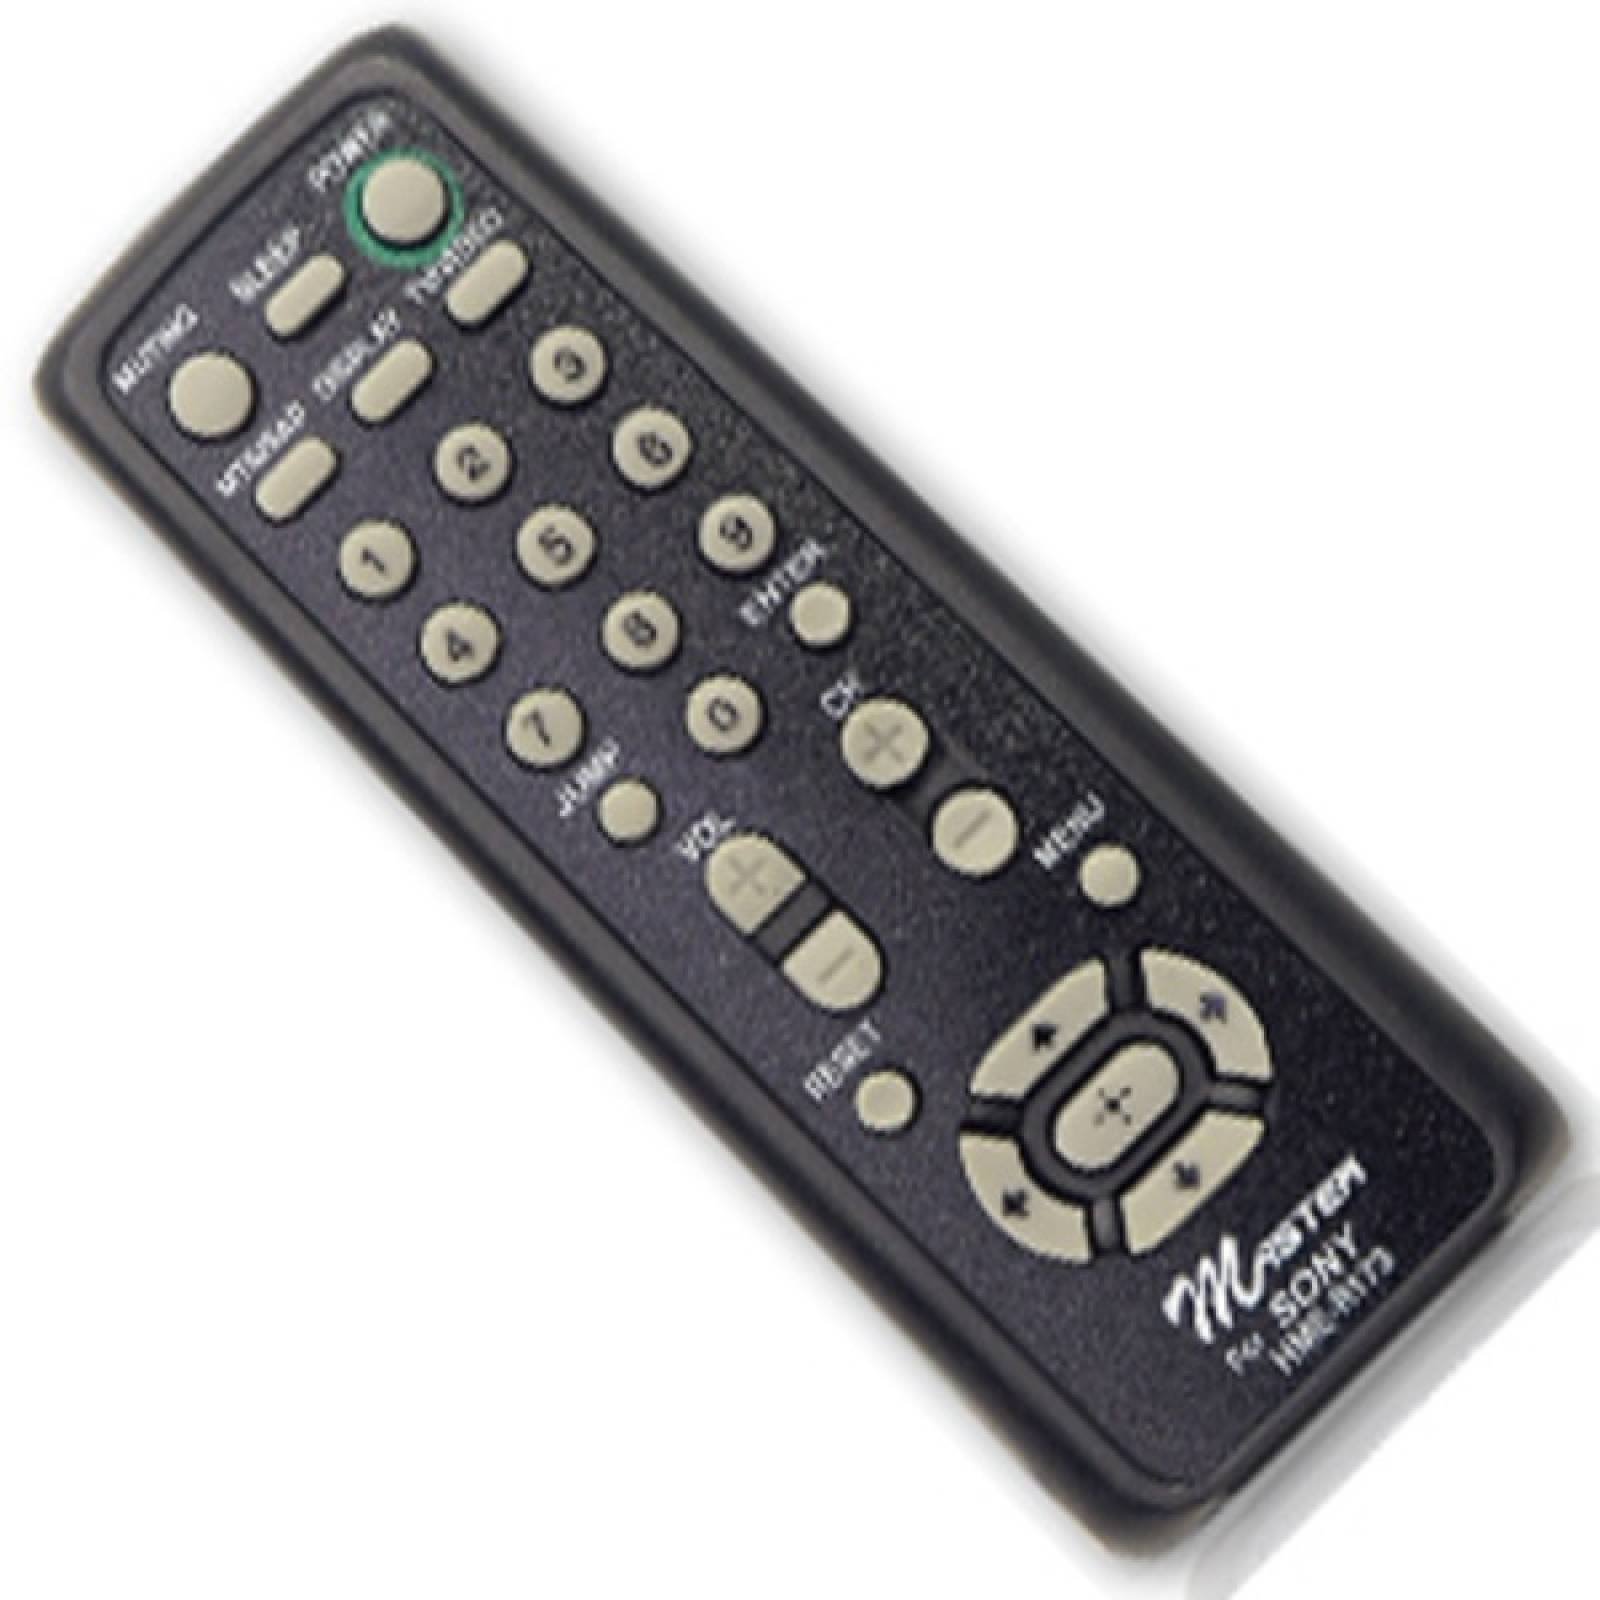 Control remoto TV Master Para marca Sony HME-R173